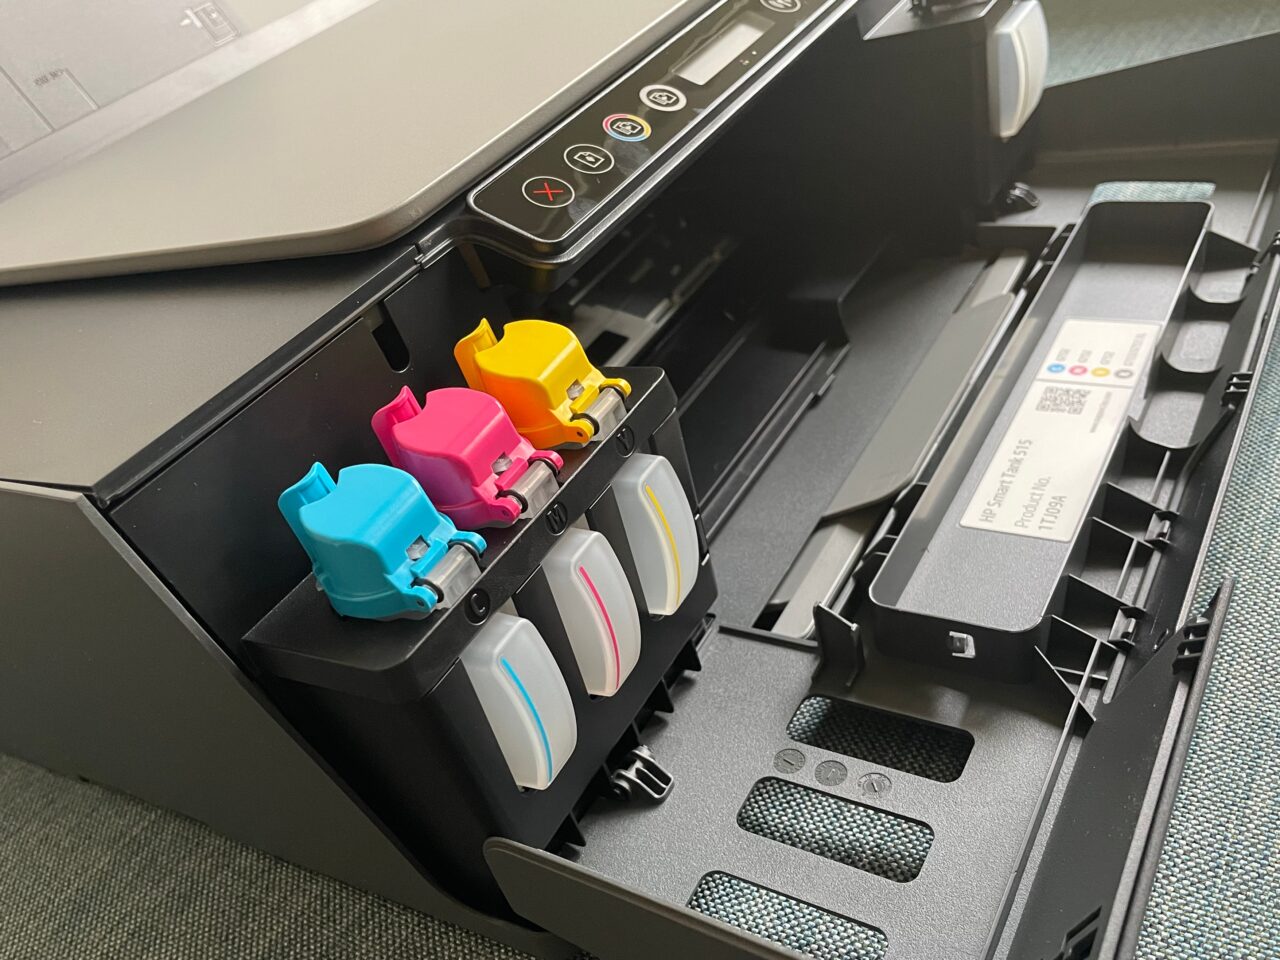 Wnętrze otwartej drukarki biurowej z widocznymi kolorowymi pojemnikami z tuszem w kolorach cyjanku, magenty, żółci i czerni.